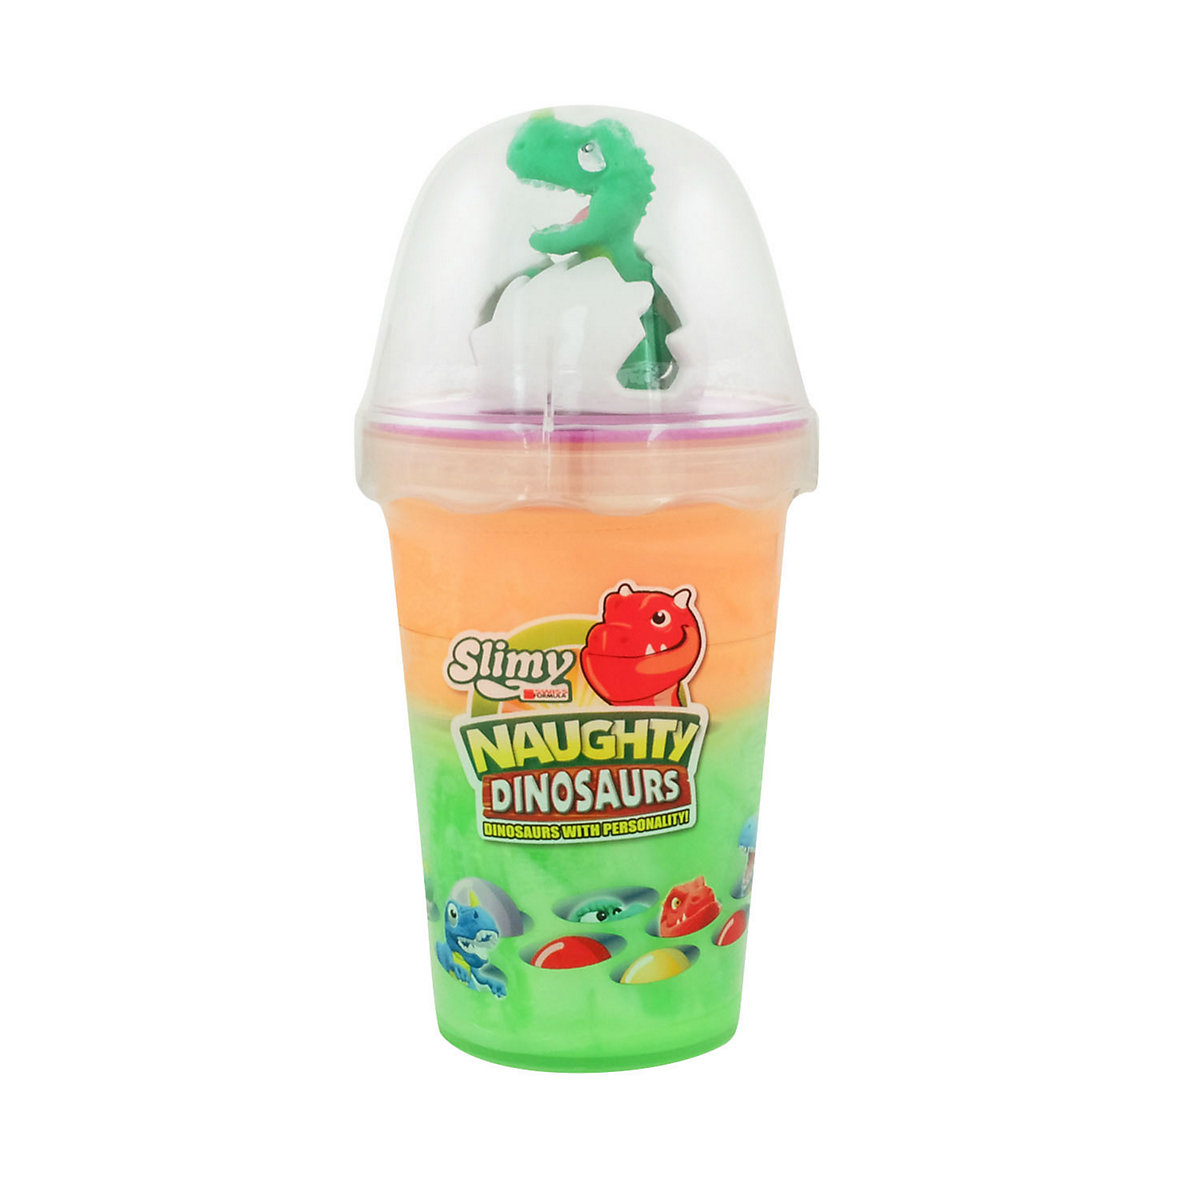 SLIMY® Dinosaur Collectible 155g Original Slimy Slime Spielmasse in zwei Farben inkl. lustiger Dinosaurier Sammelfigur